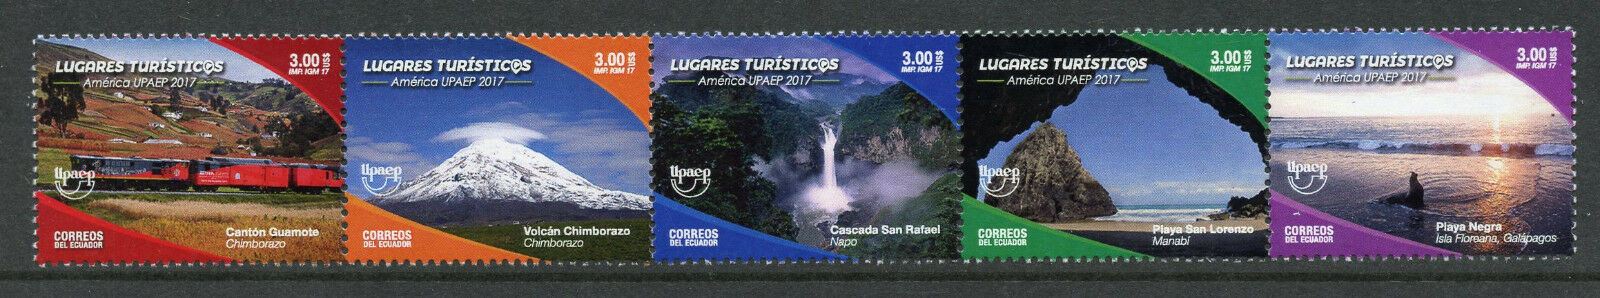 Ecuador 2017 MNH UPAEP Tourism 8v S/A Booklet + 5v Strip Birds Flowers Stamps